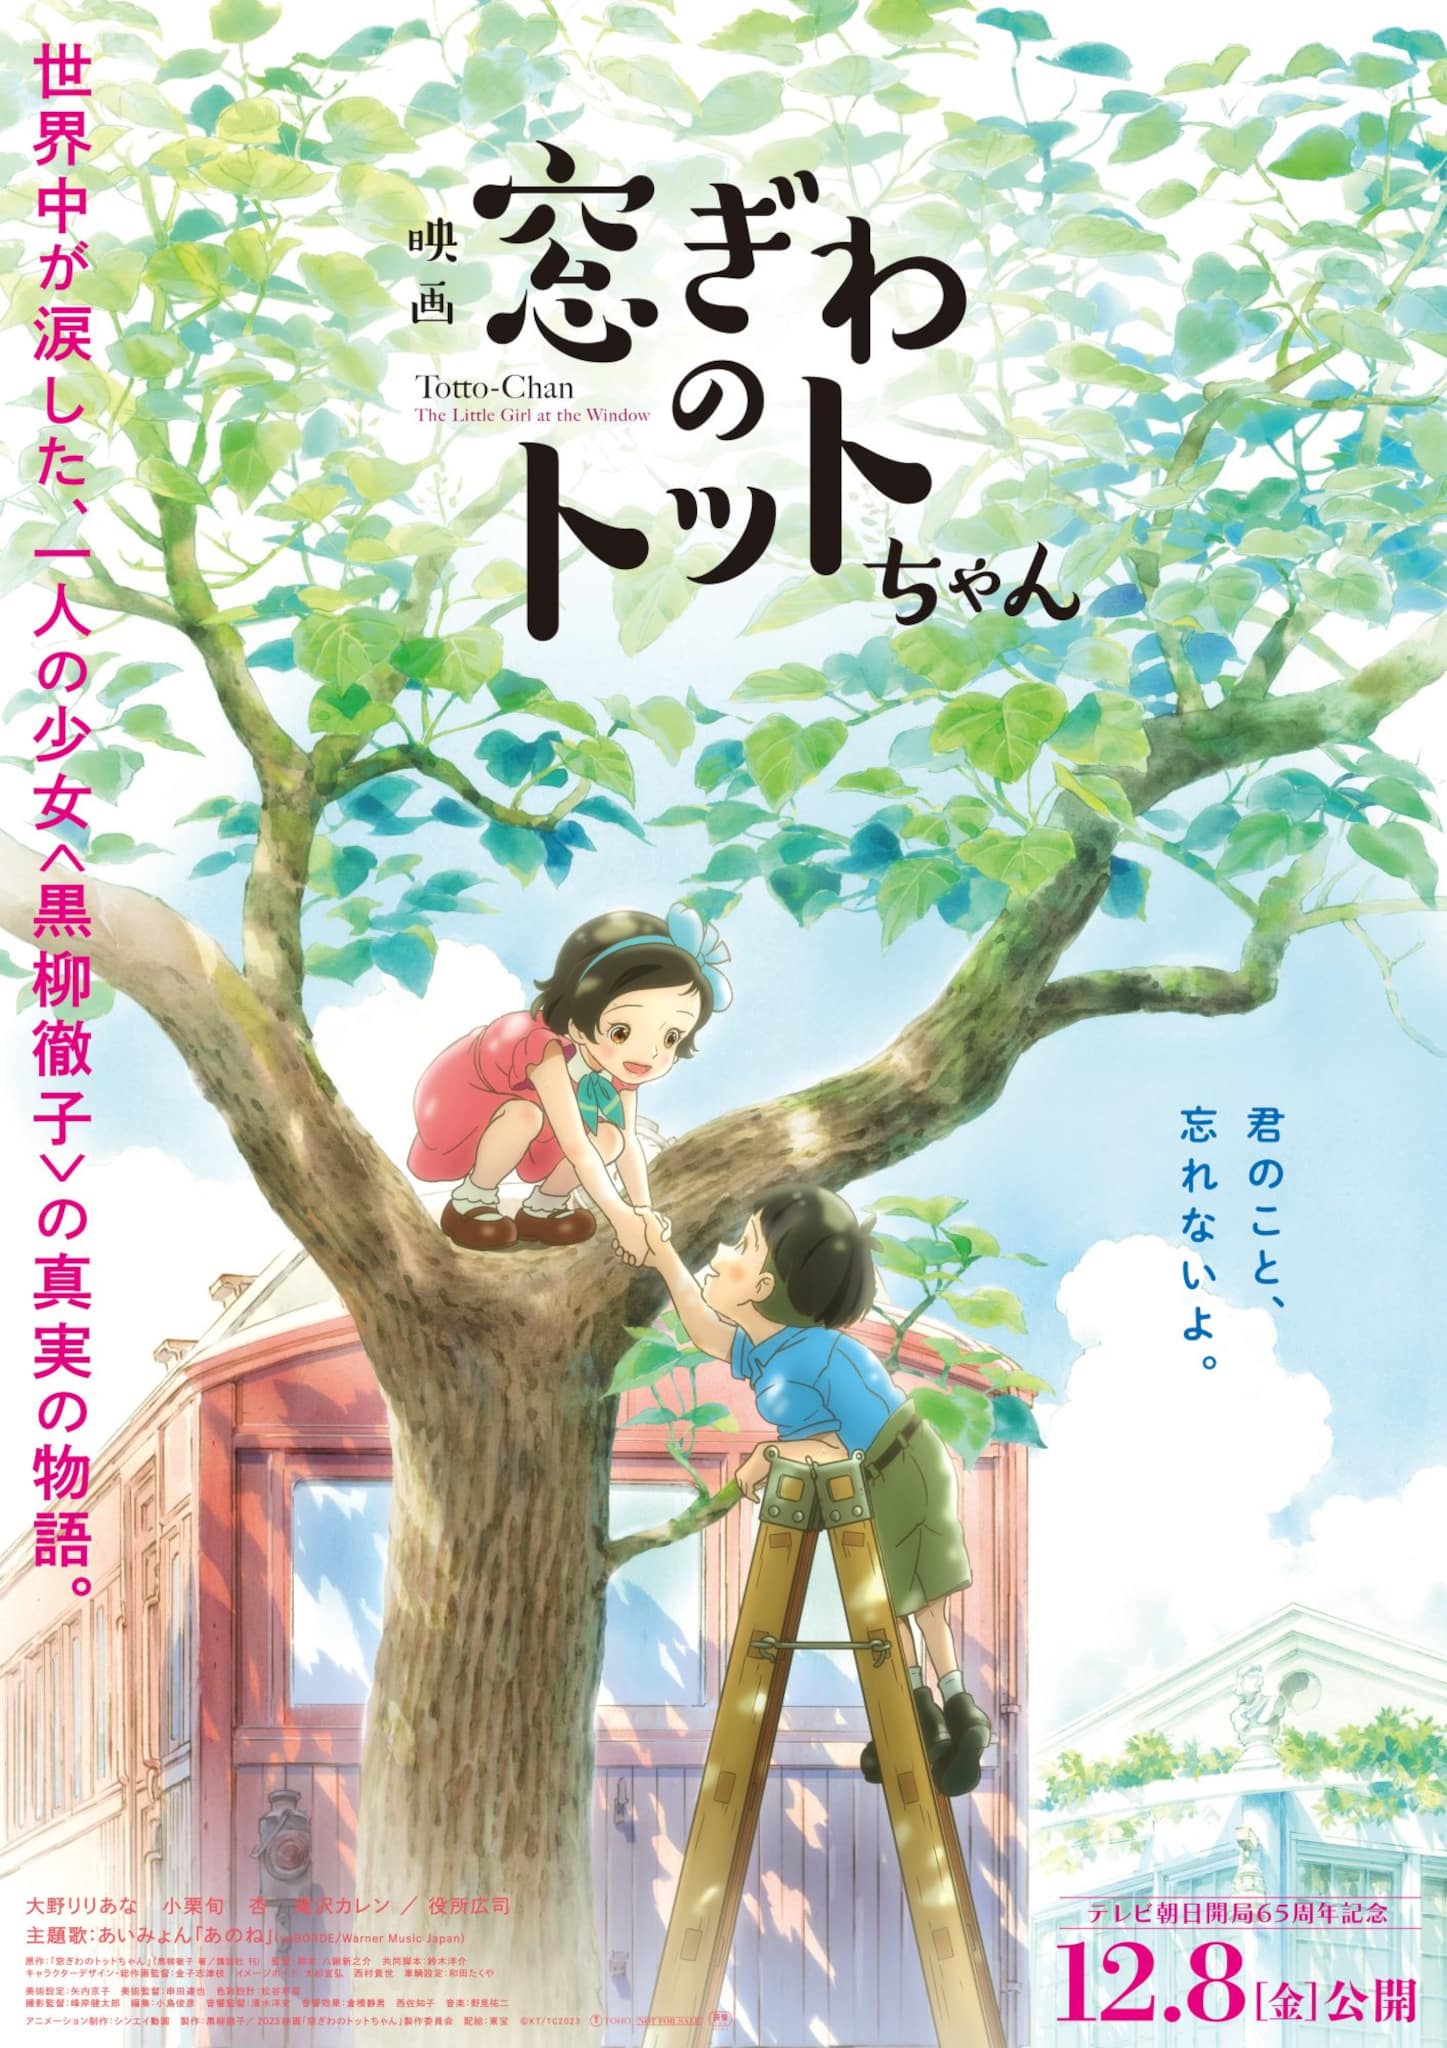 Troisième visuel pour le film Totto-chan : The Little Girl at the Window